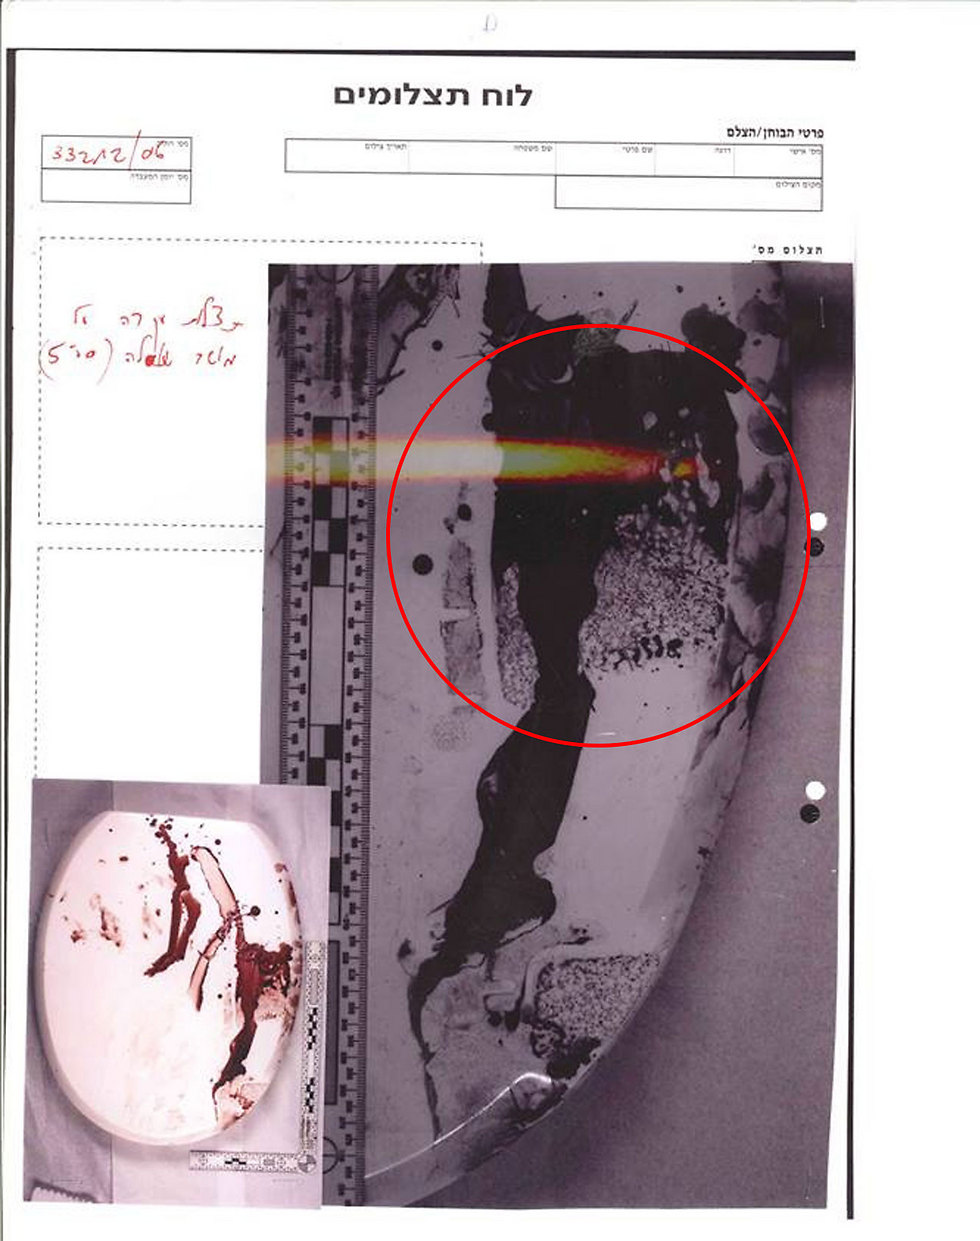 צילום מתא השירותים שבו נמצאה תאיר ז"ל והגדלת טביעת הנעל המגואלת בדם על האסלה (צילום: אפי שריר) (צילום: אפי שריר)